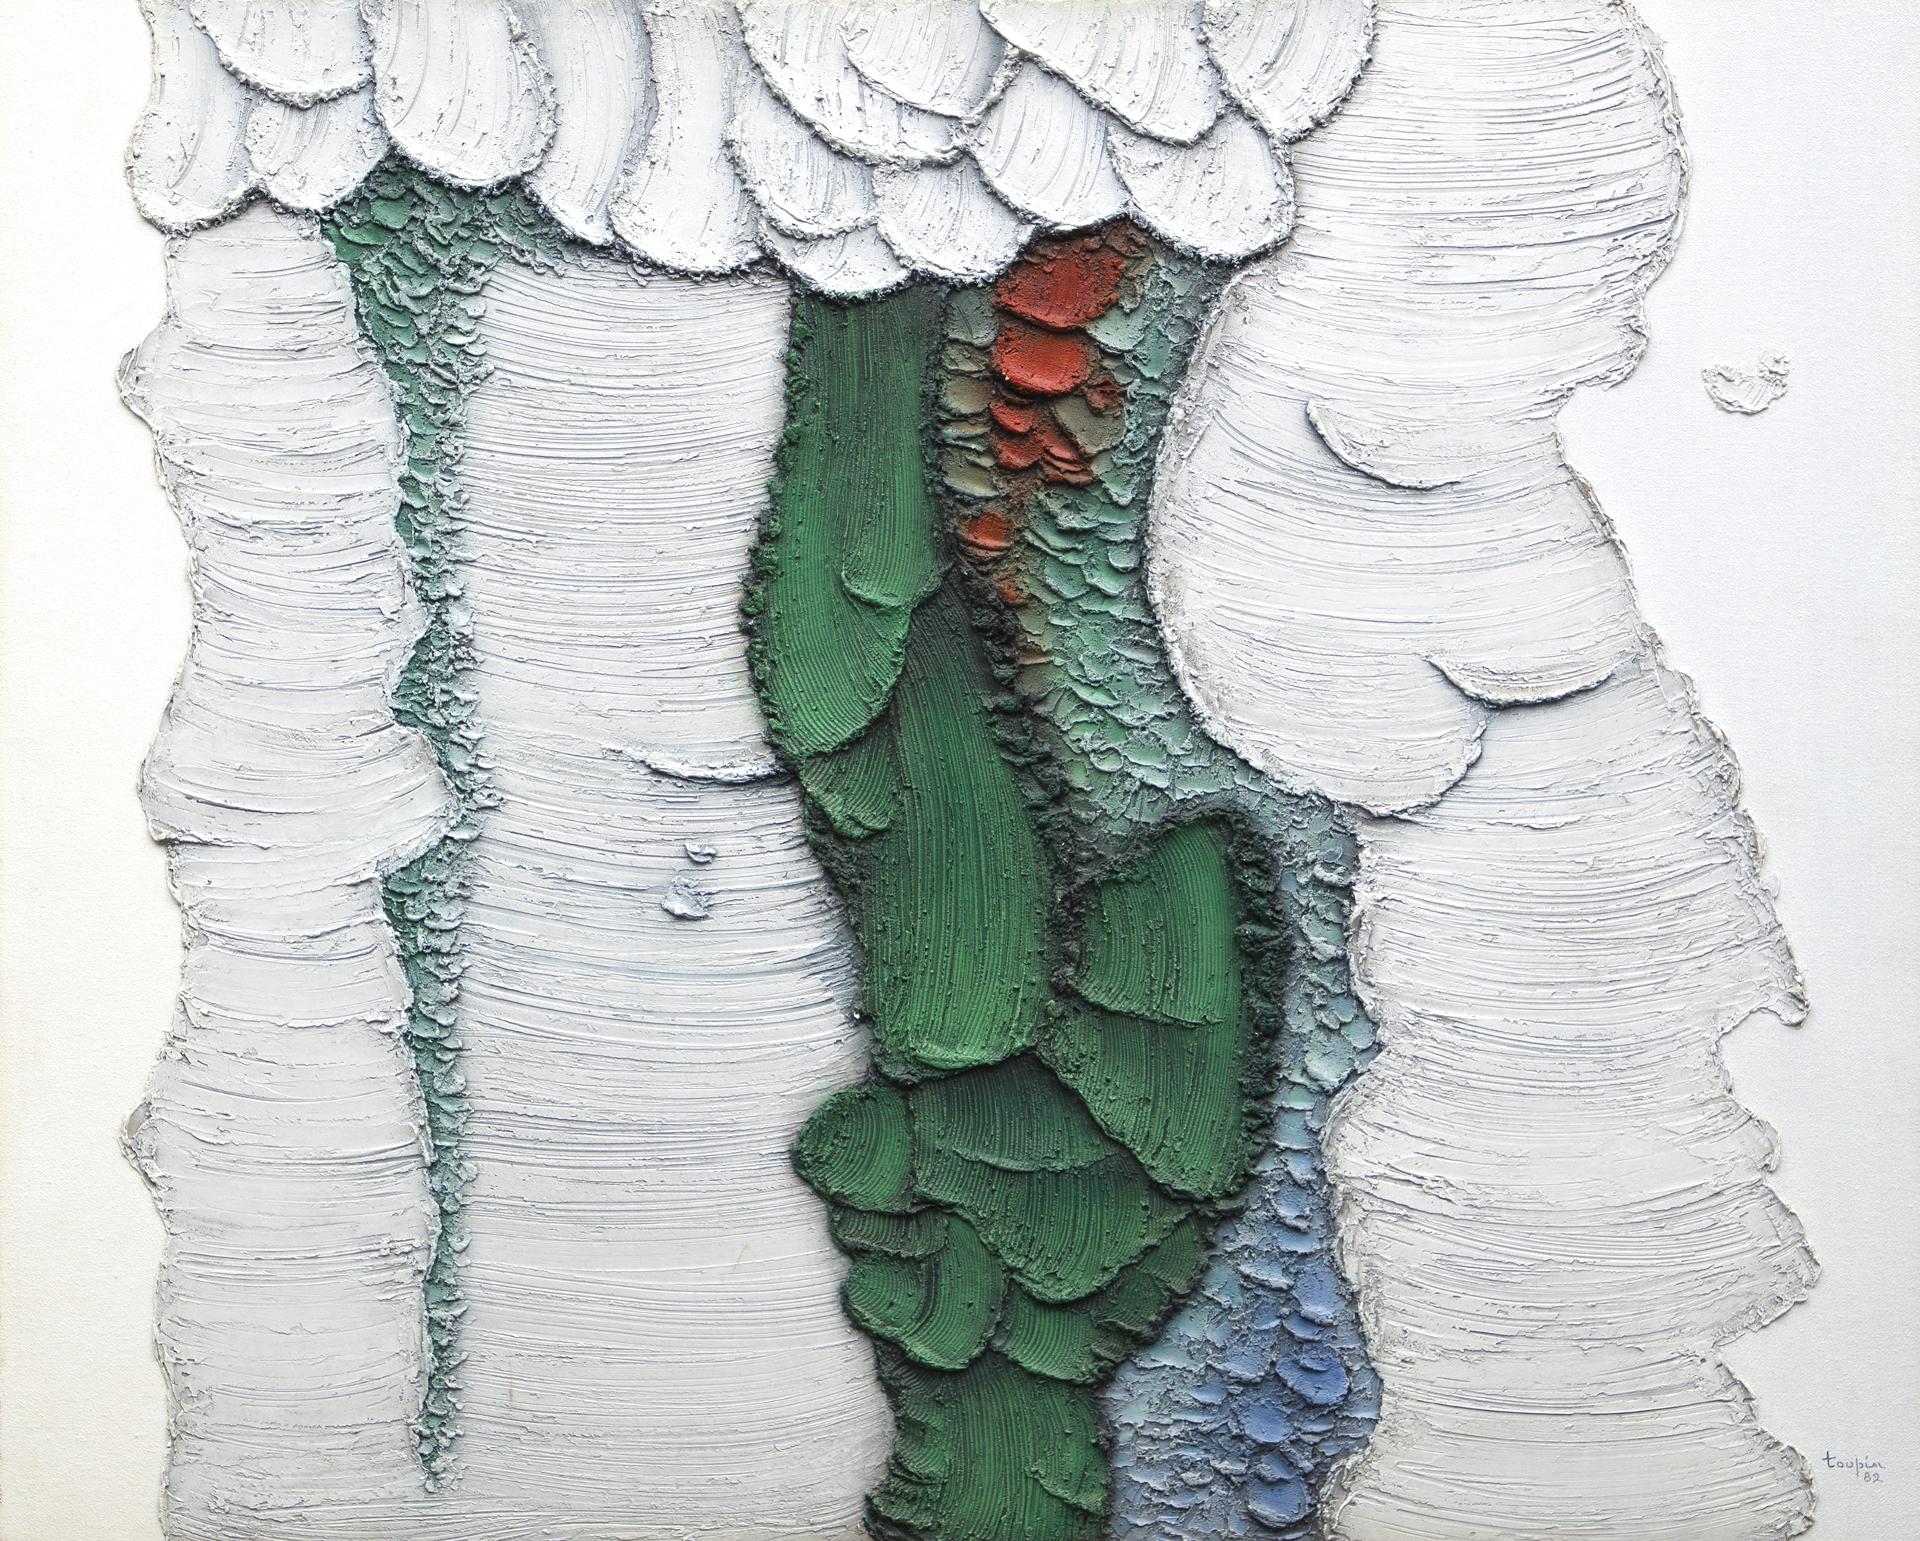 Fernand Toupin (1930-2009) - Verts en cascade, 1982